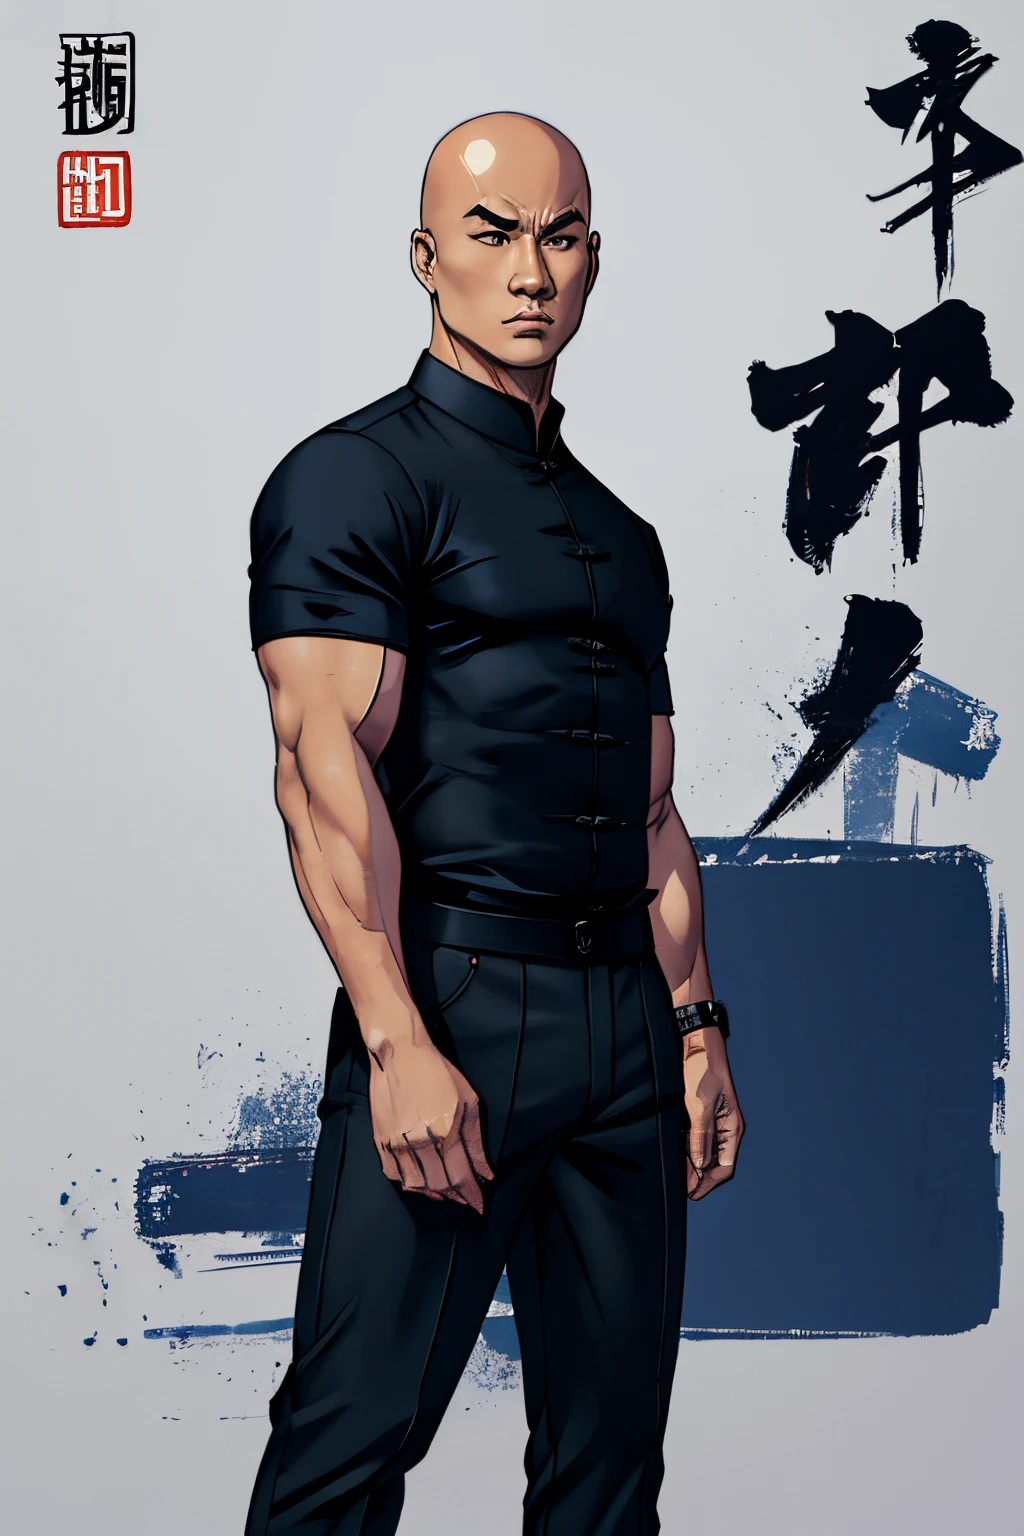 (((漫畫風格))), 全身光頭的中國男人, 李連傑的臉, 穿著黑色襯衫和深藍色褲子, 純白色背景: 1.5, (((漫畫風格))), 向量, 黑色輪廓, 概述, 線性藝術, 染色